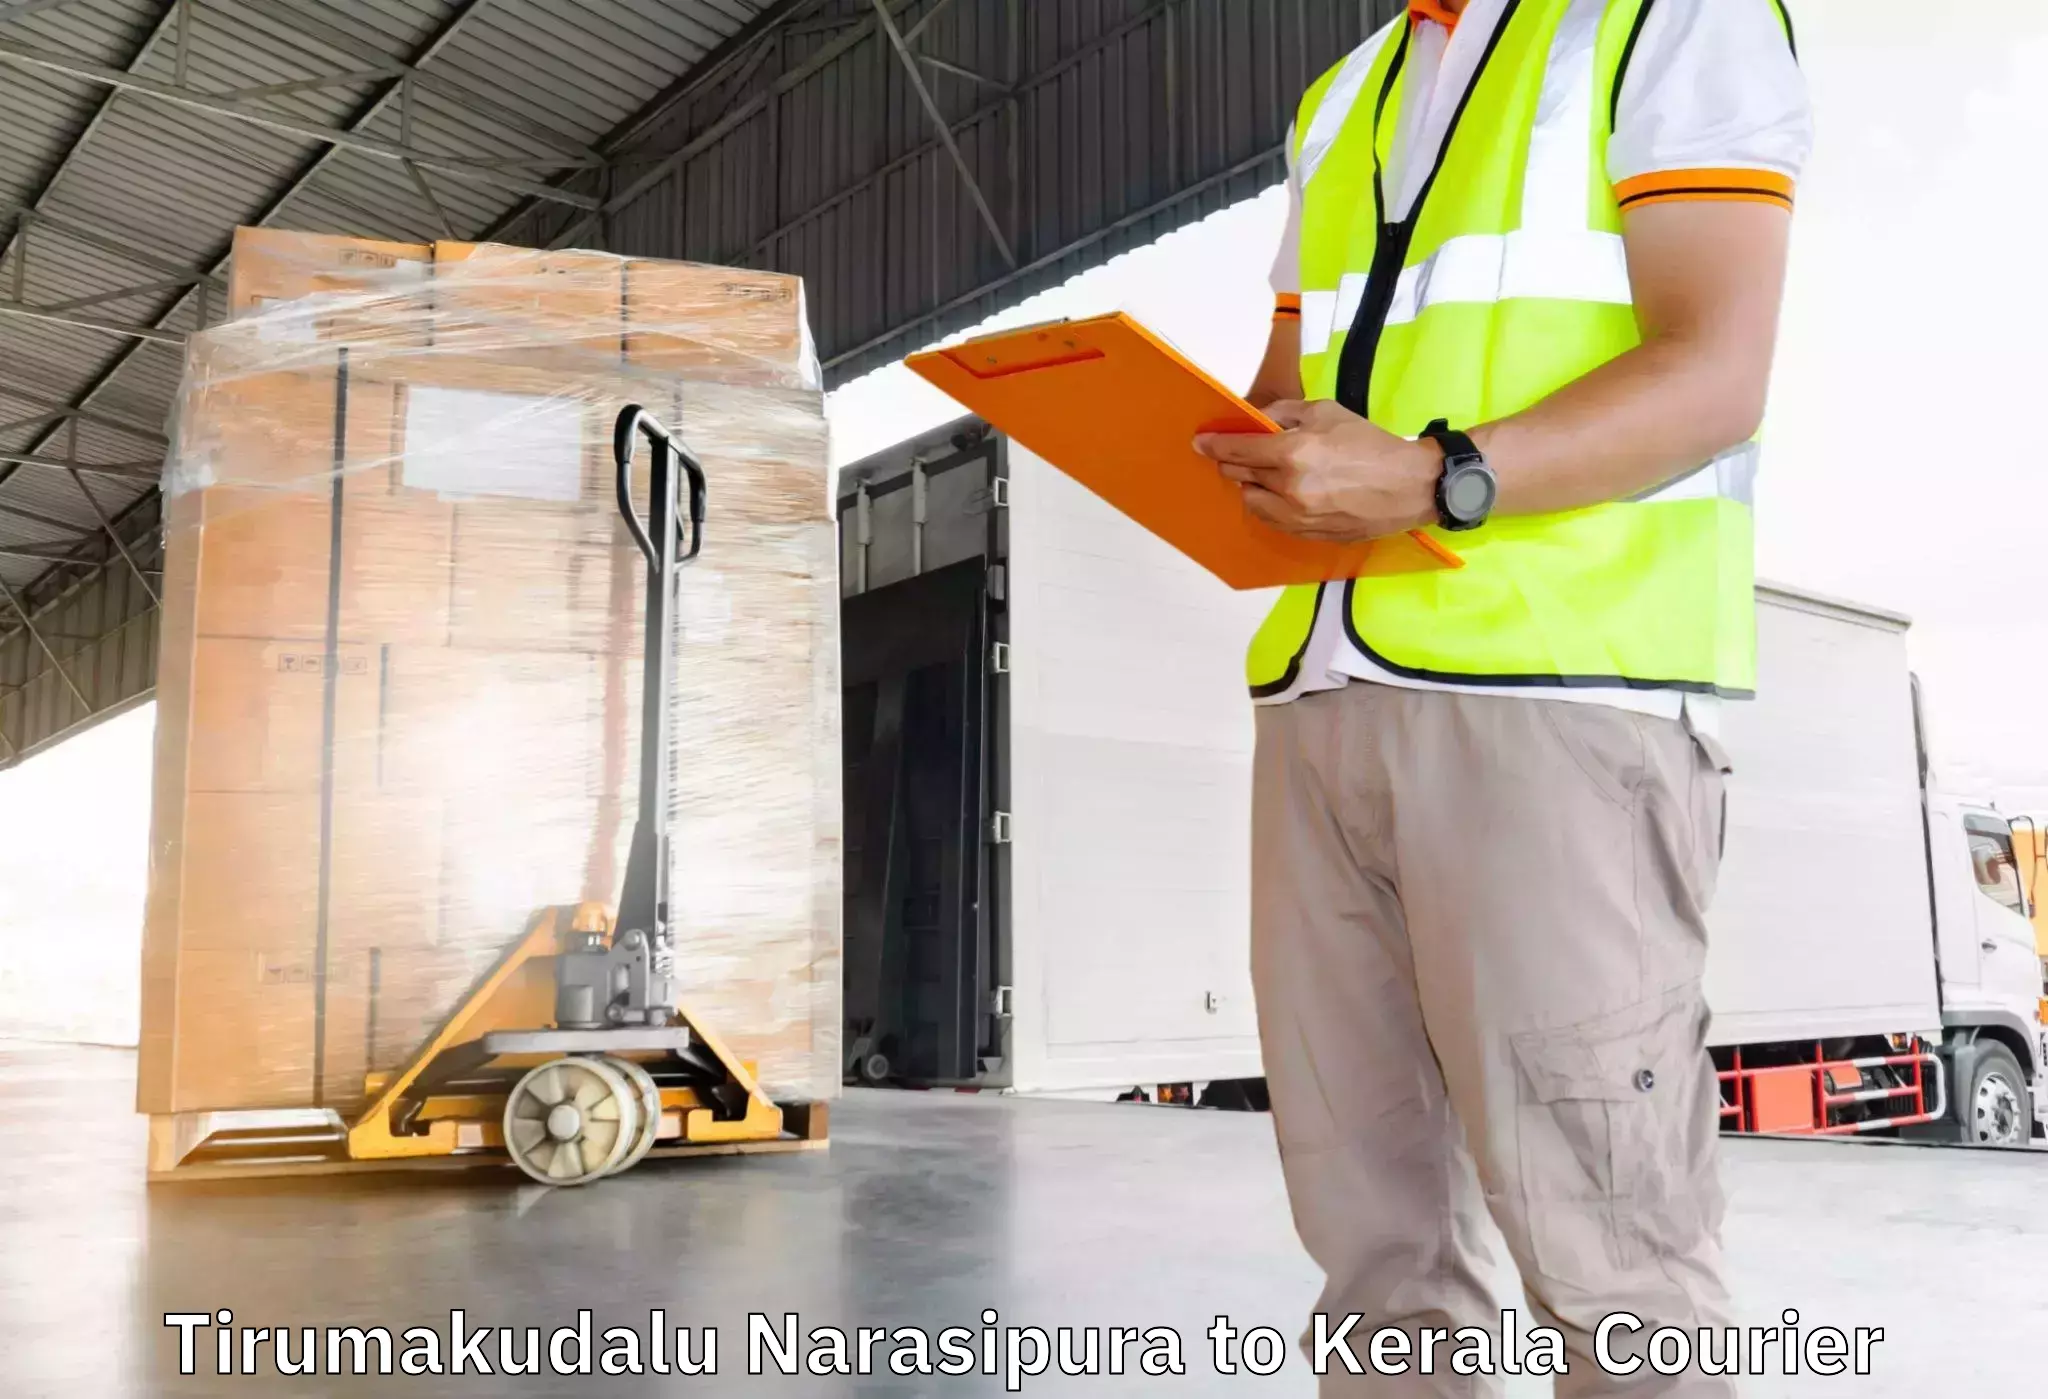 Household goods transport service in Tirumakudalu Narasipura to Parappa